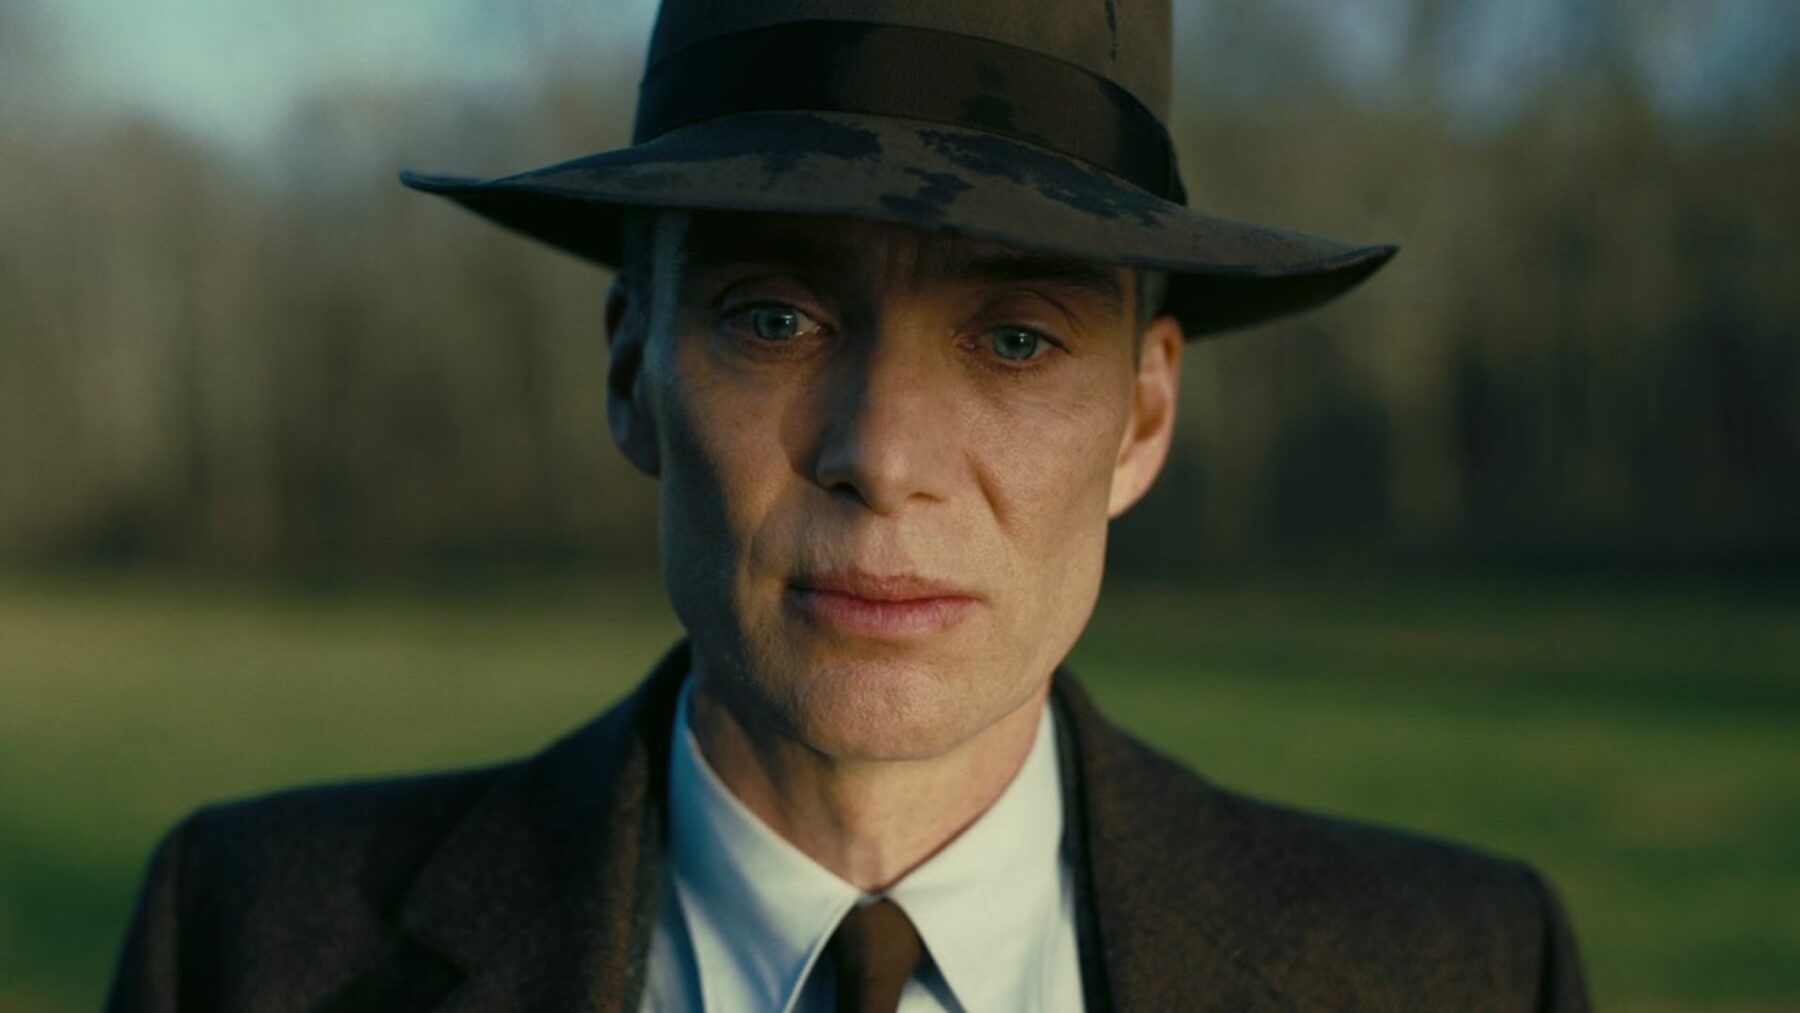 Zbliżenie na głównego aktora, mężczyzna jest w eleganckim garniturze i kapeluszu.